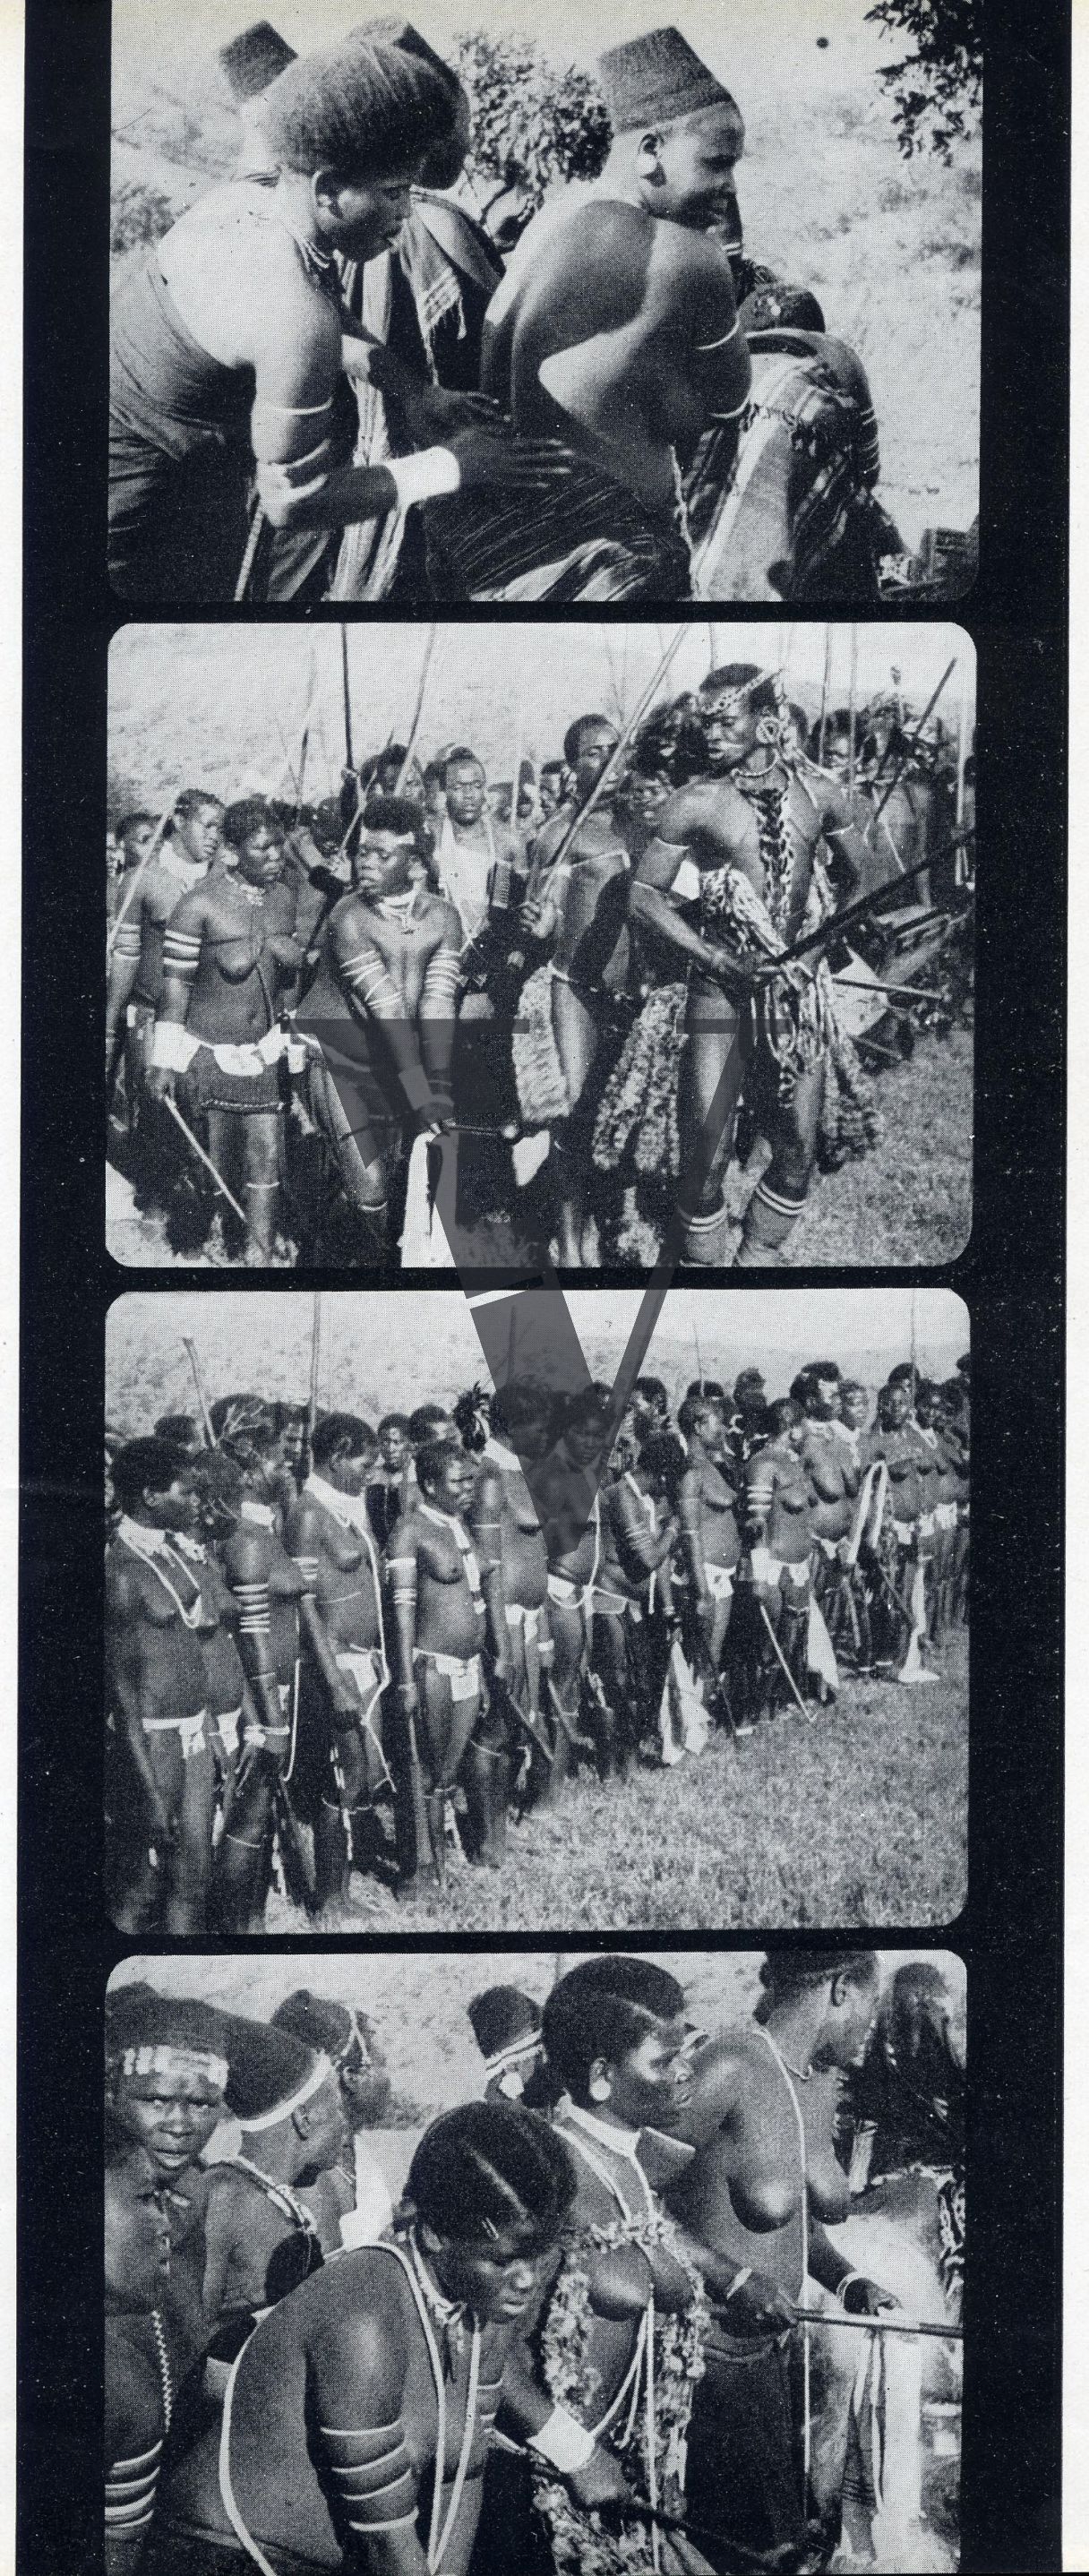 Siliva the Zulu, Production still, Fotogrammi Film Strip 7.